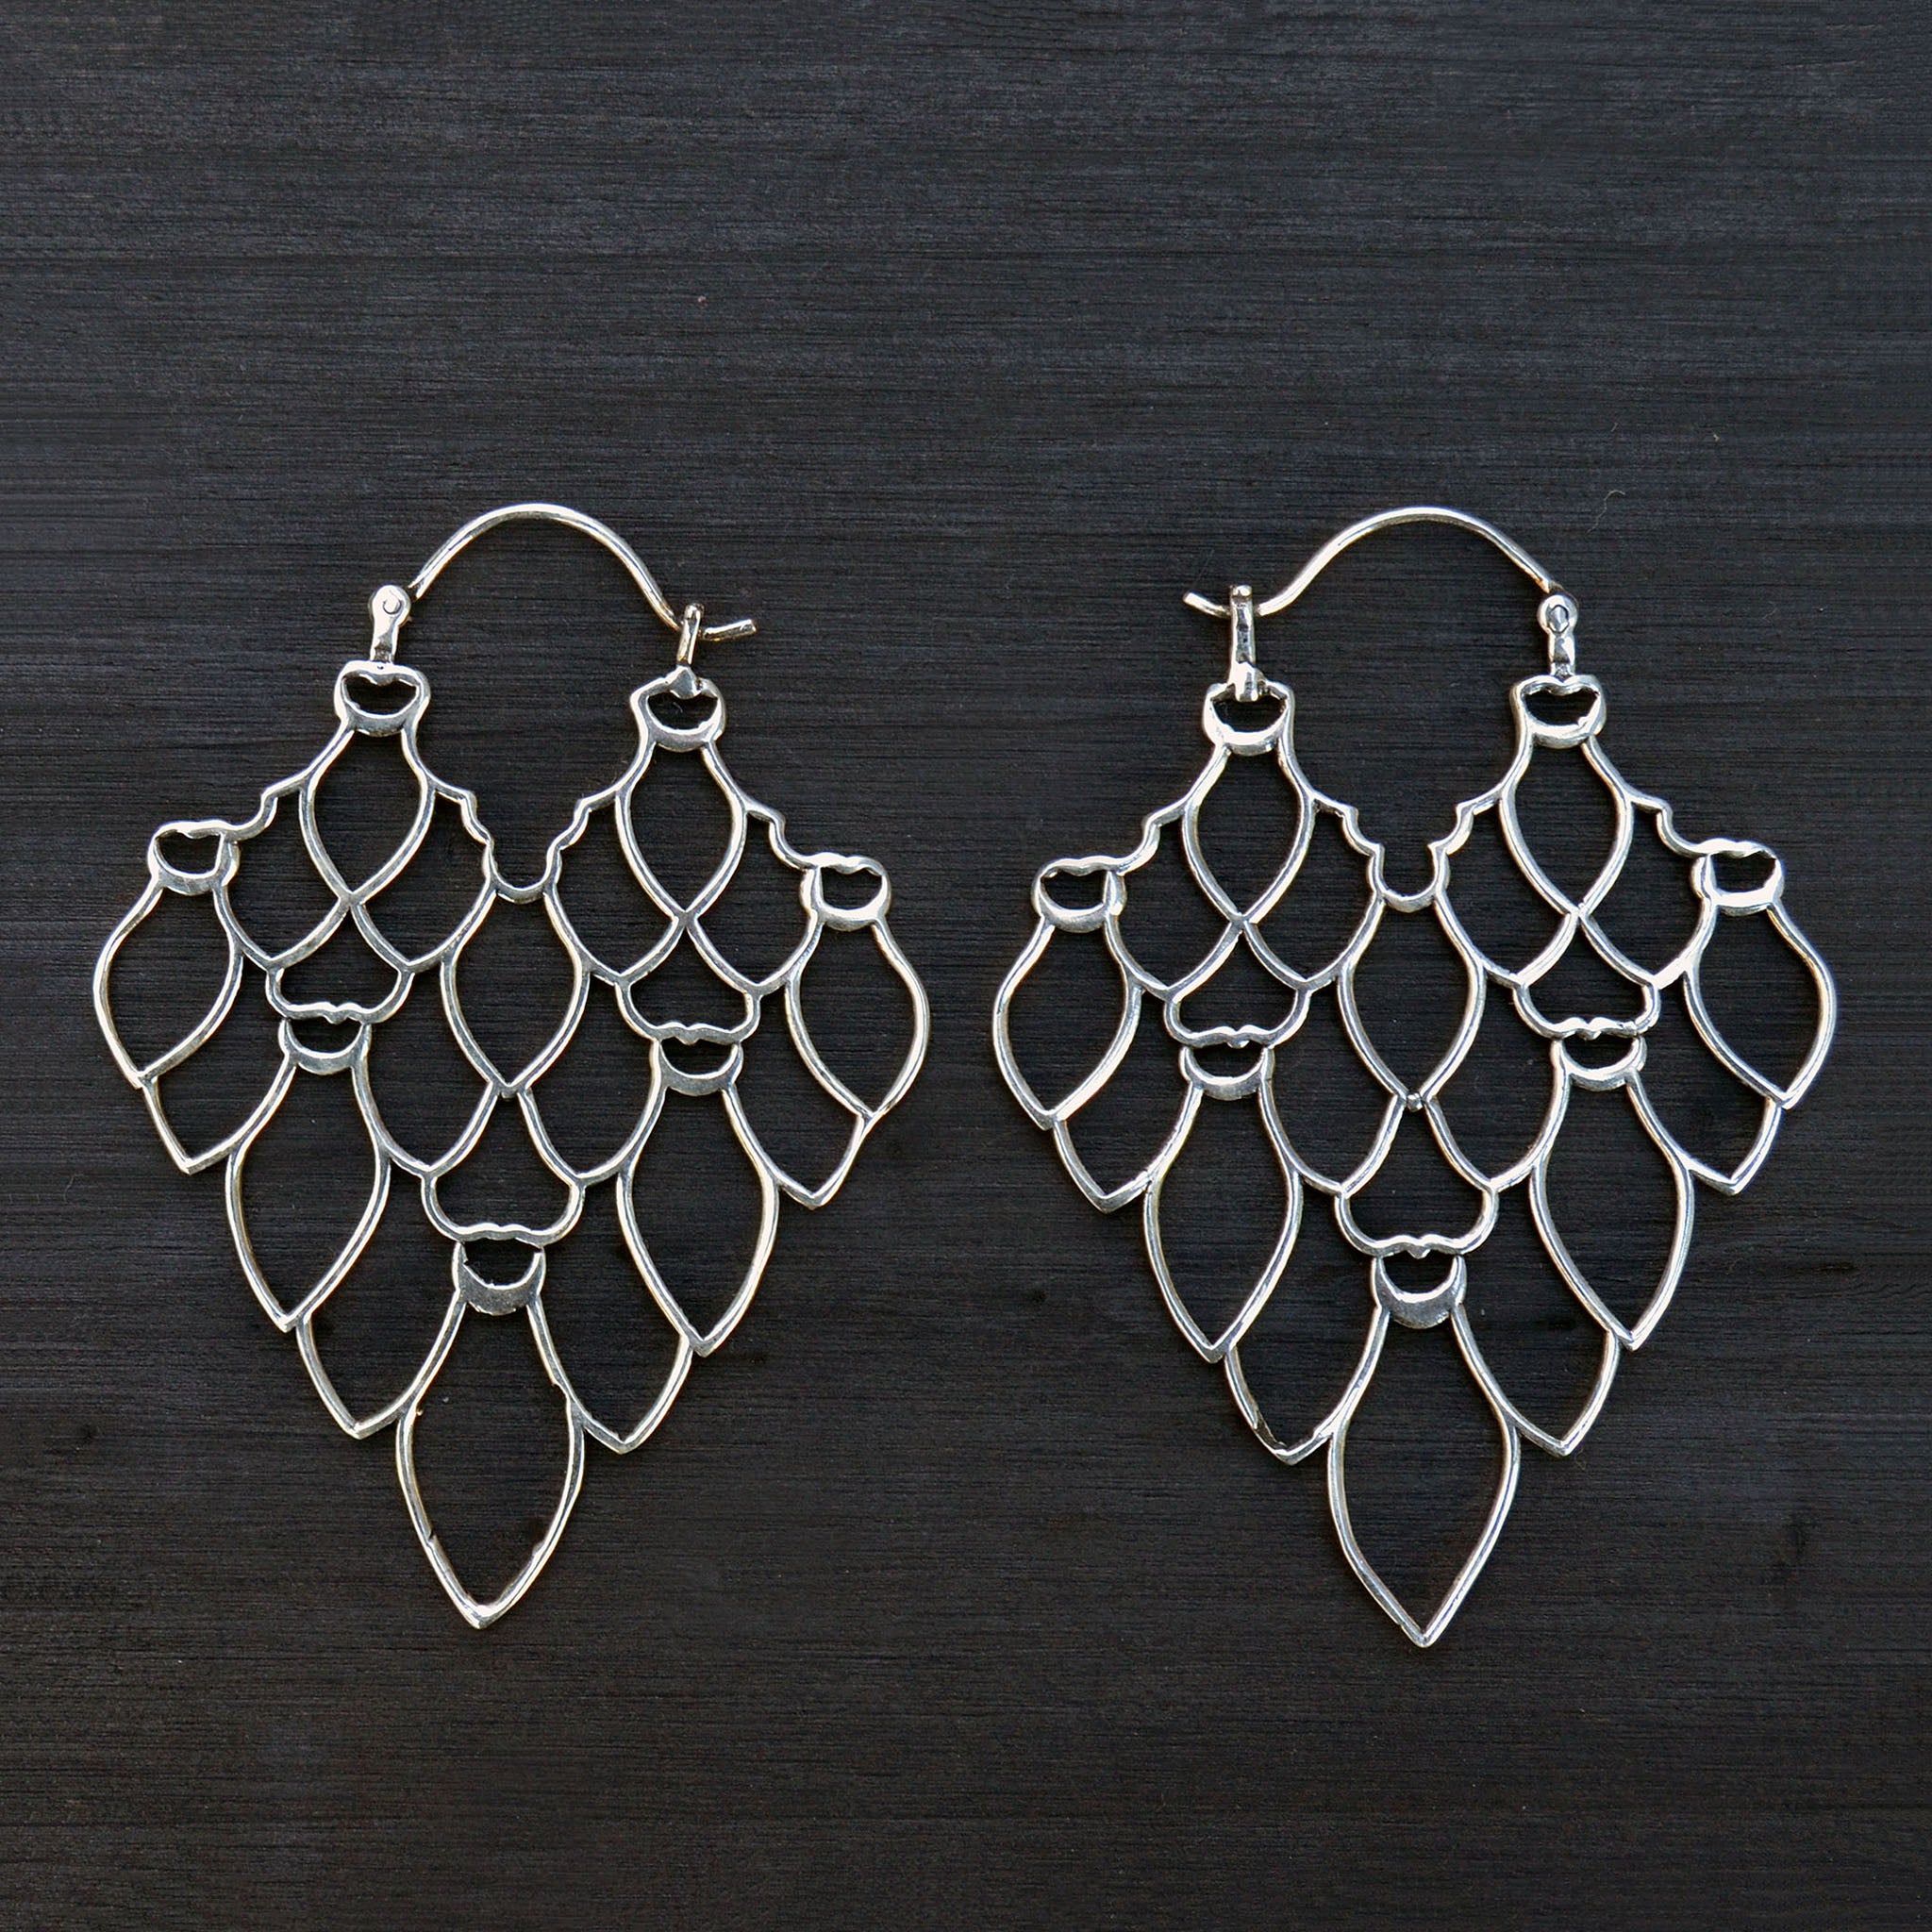 Silver cluster earrings